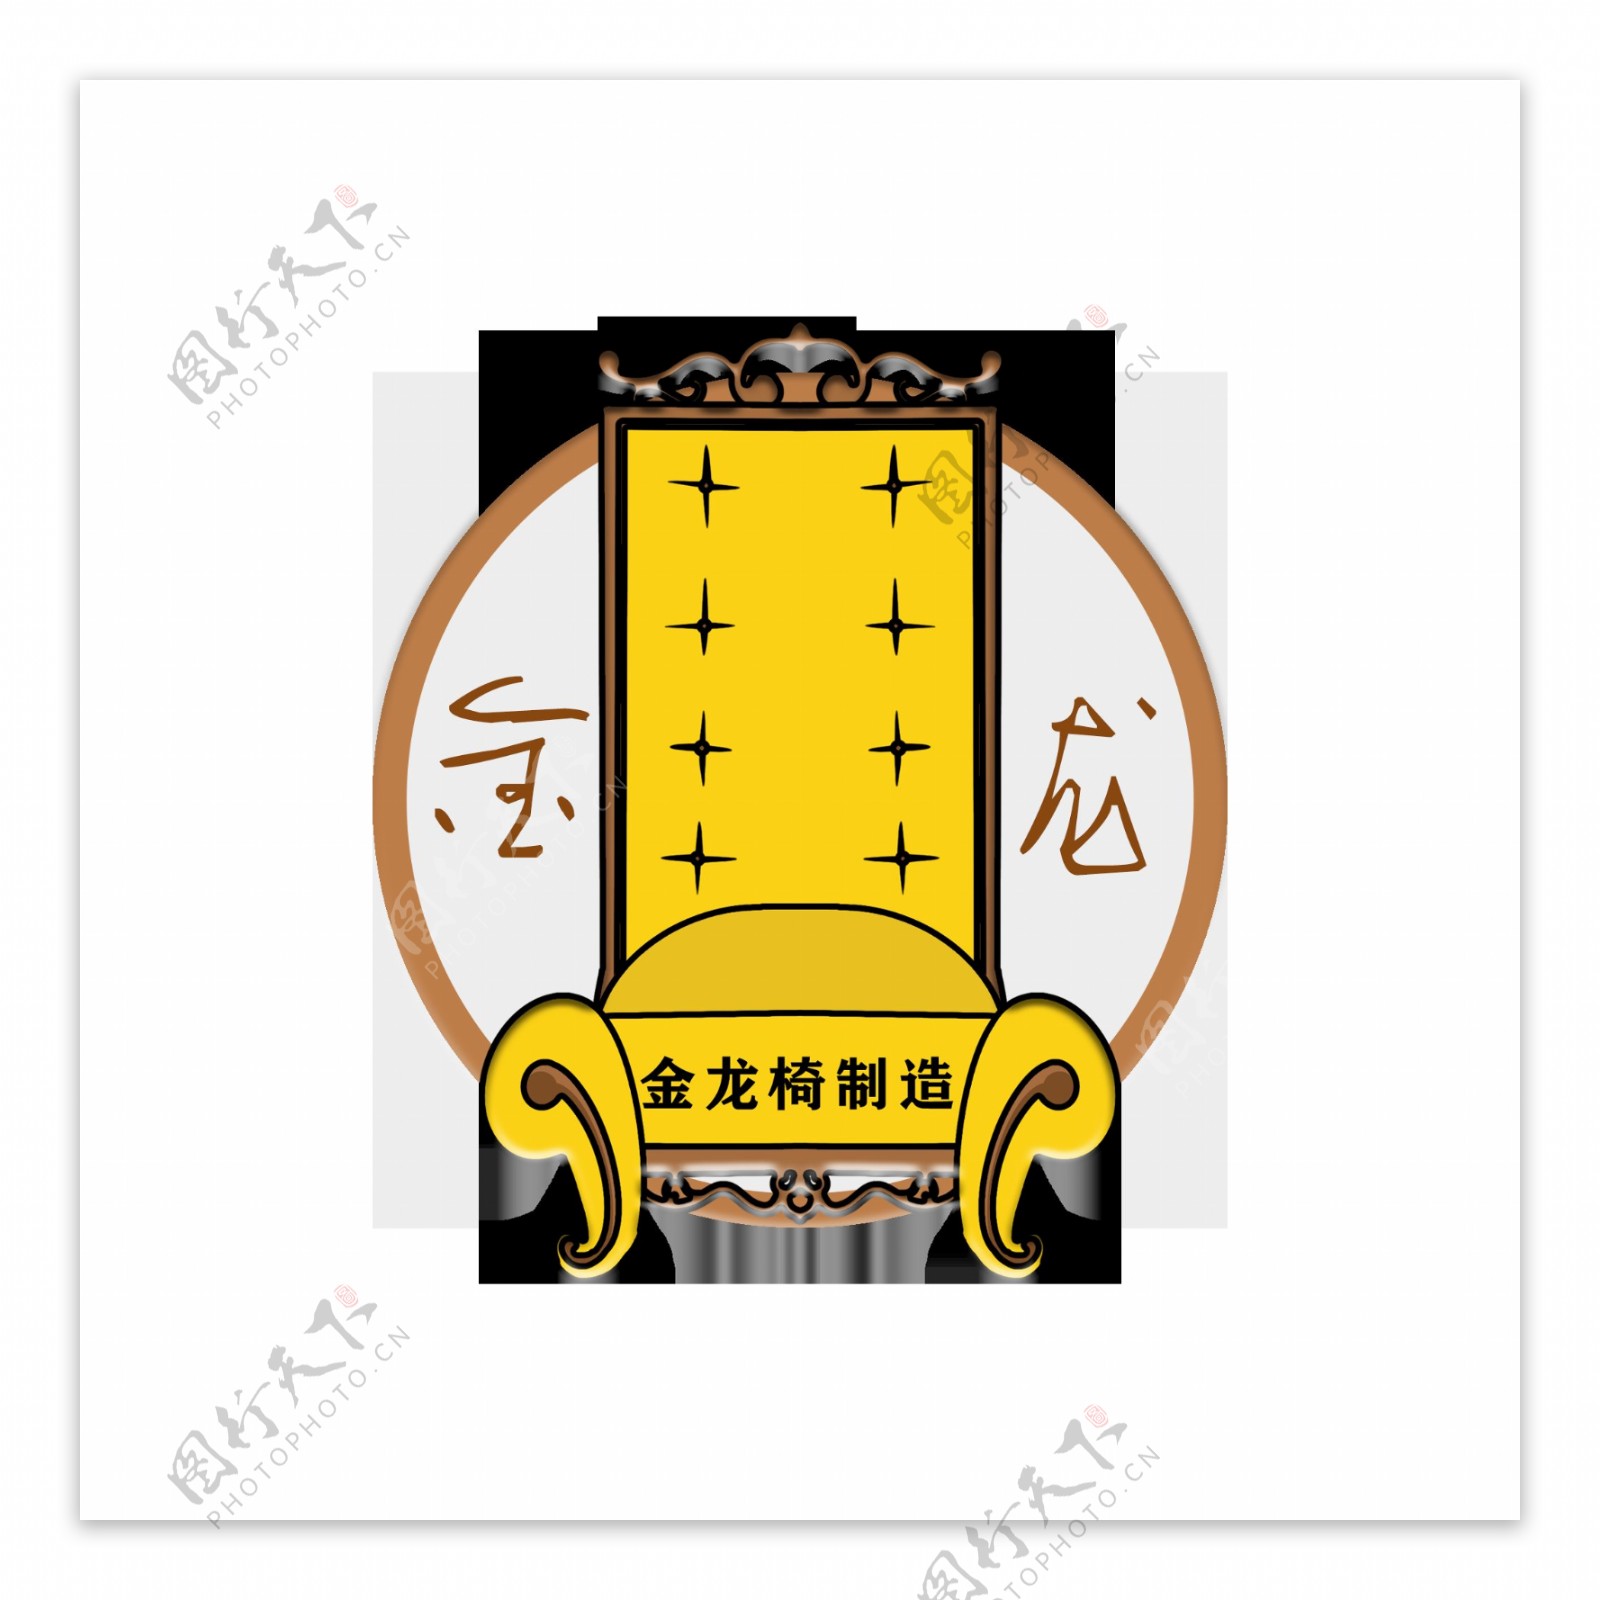 金龙椅制造公司Logo